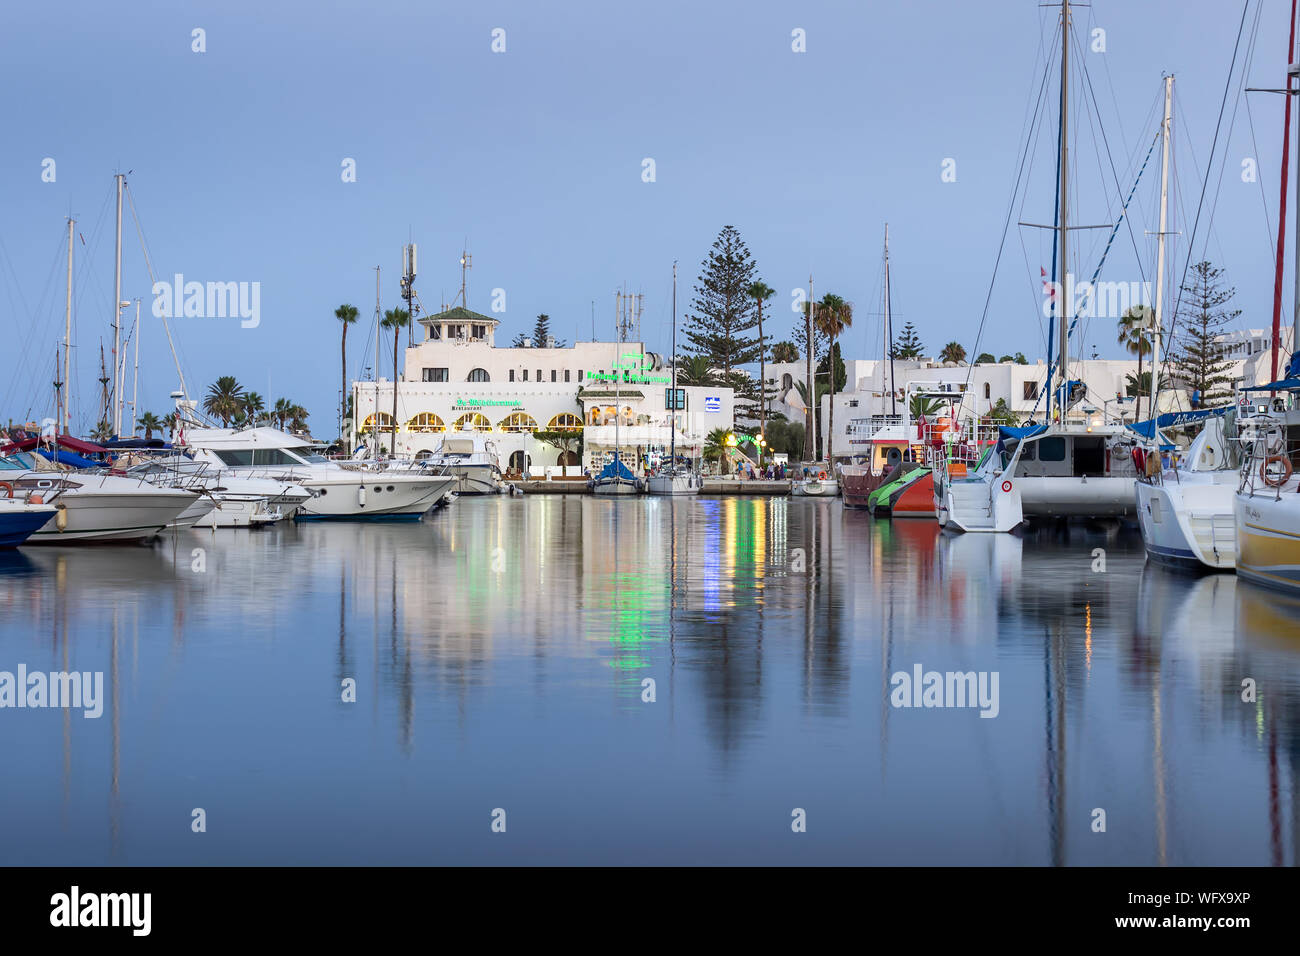 Heure bleue à Marina Port El Kantaoui, de beaux bateaux, yachts et bateaux stationnés dans la mer, restaurants et boutiques de cadeaux Banque D'Images